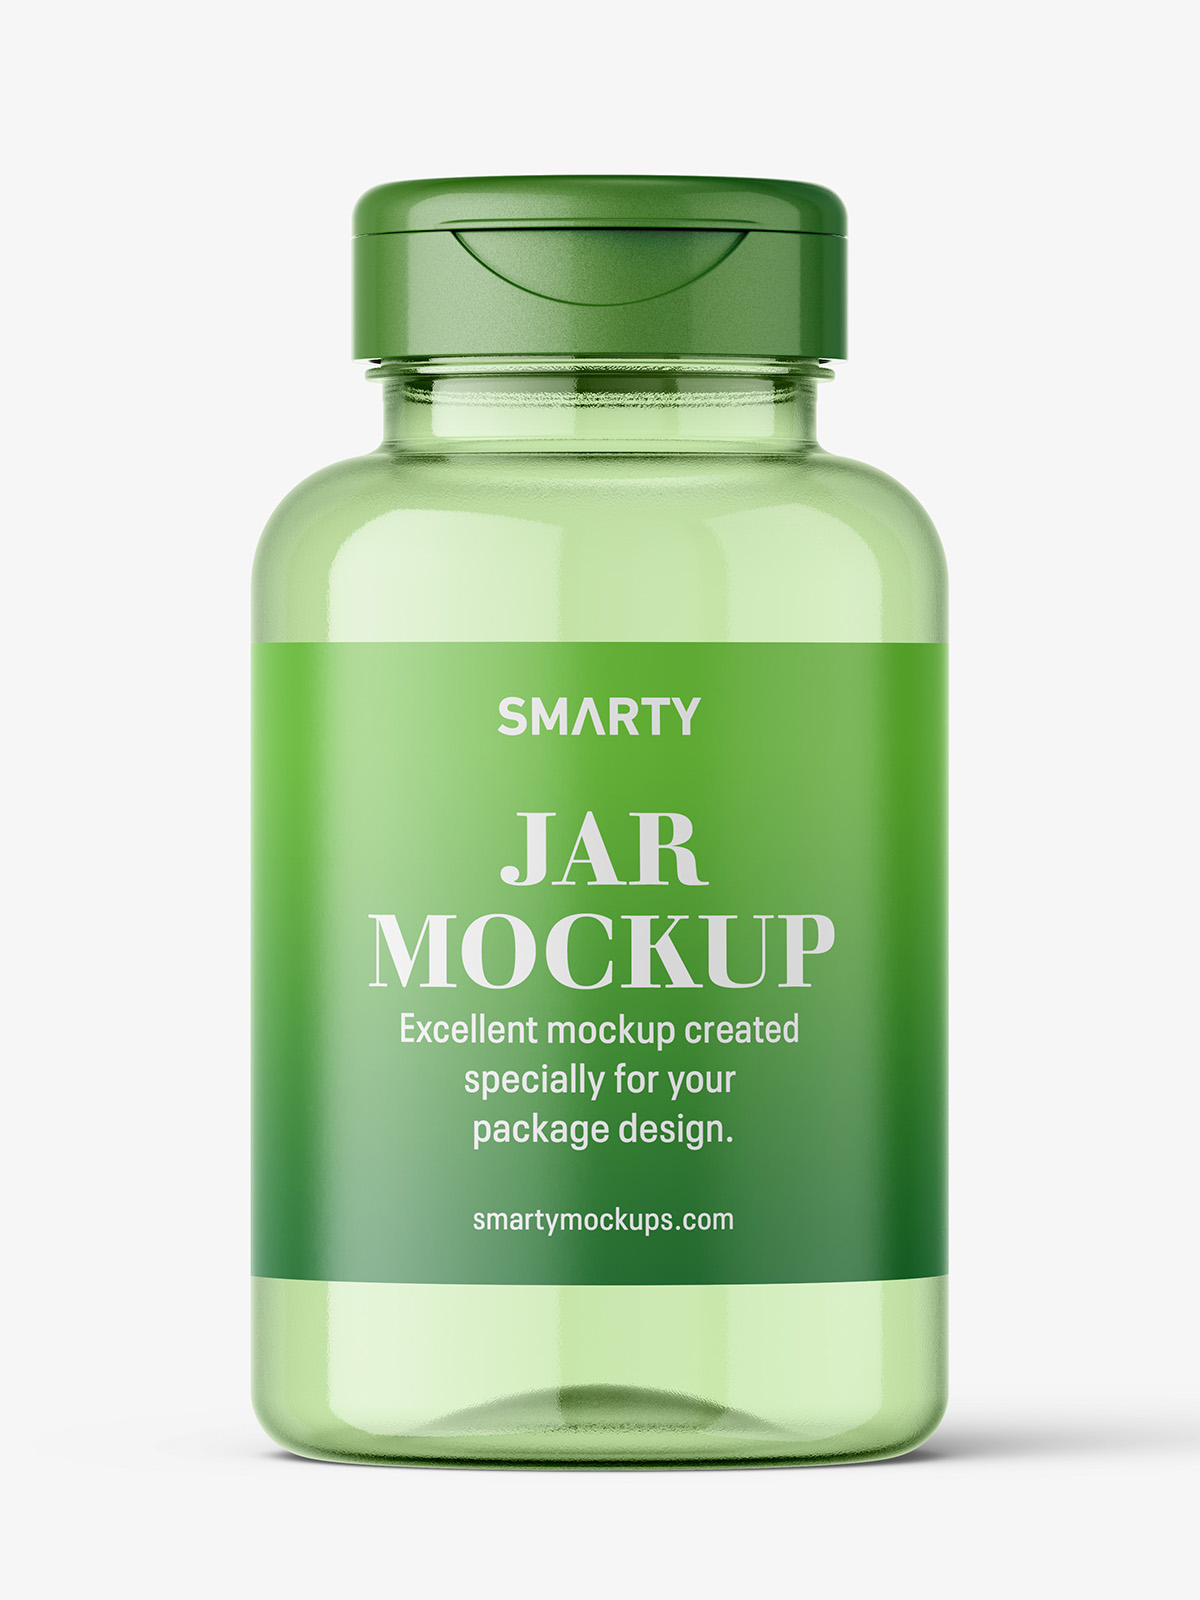 Download Clear plastic jar mockup - Smarty Mockups